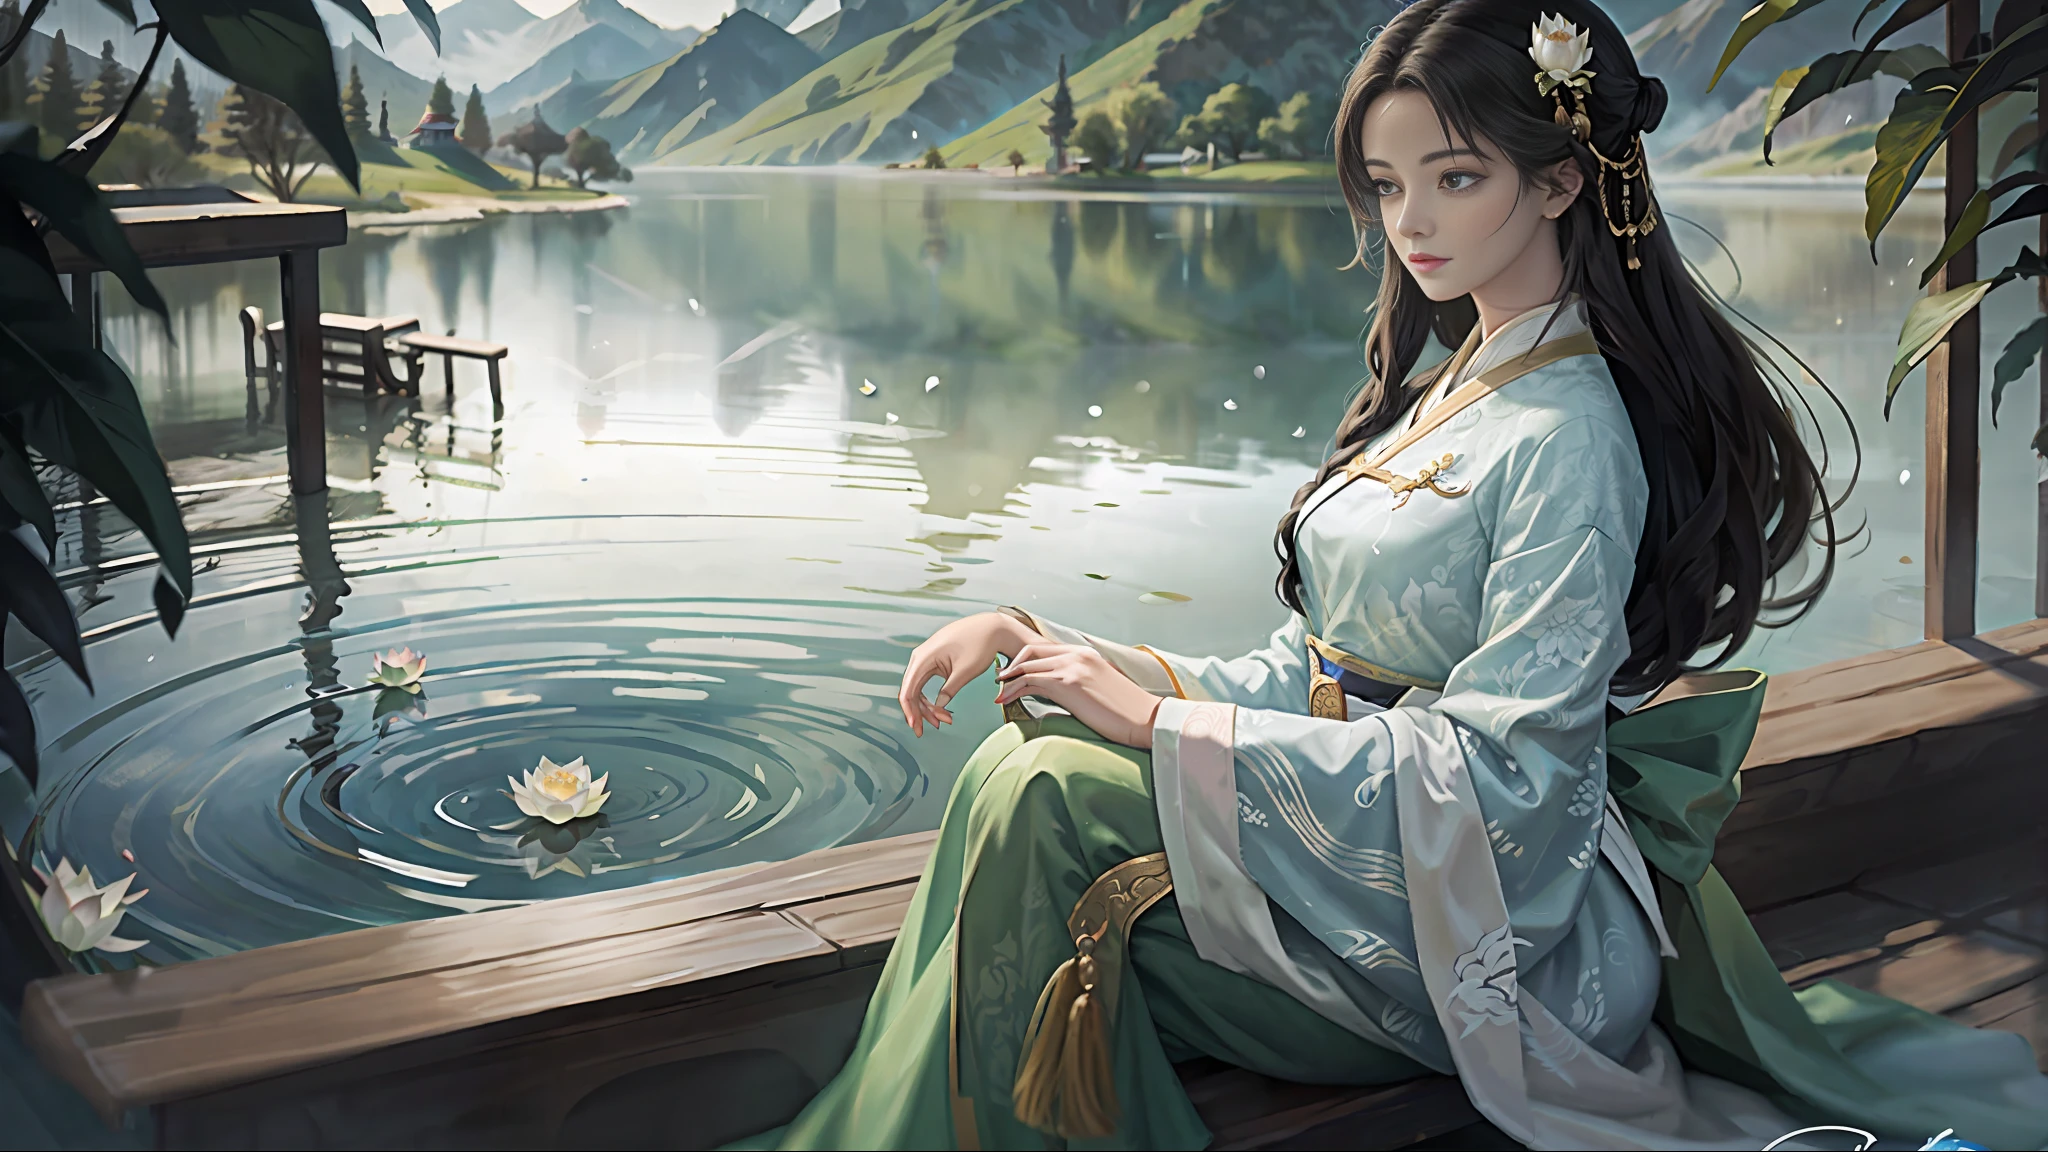 중국 고대 스타일, 호숫가 파빌리온에서, 중국 전통 하얀 한푸를 입은 여자, 여자는 파빌리온의 의자에 앉아 있습니다, 여자는 호수를 바라본다, 배경에는 산 표면에 높은 탑이 서 있습니다, 호수에는 많은 연꽃이 있습니다, 호수 위에 호수를 가로 지르는 다리가 있습니다, 하늘이 이슬비가 내리고 있습니다, 비가 선명하게 보입니다, 옆에서 여자를 관찰하십시오, 여자는 황홀경에 빠진다,